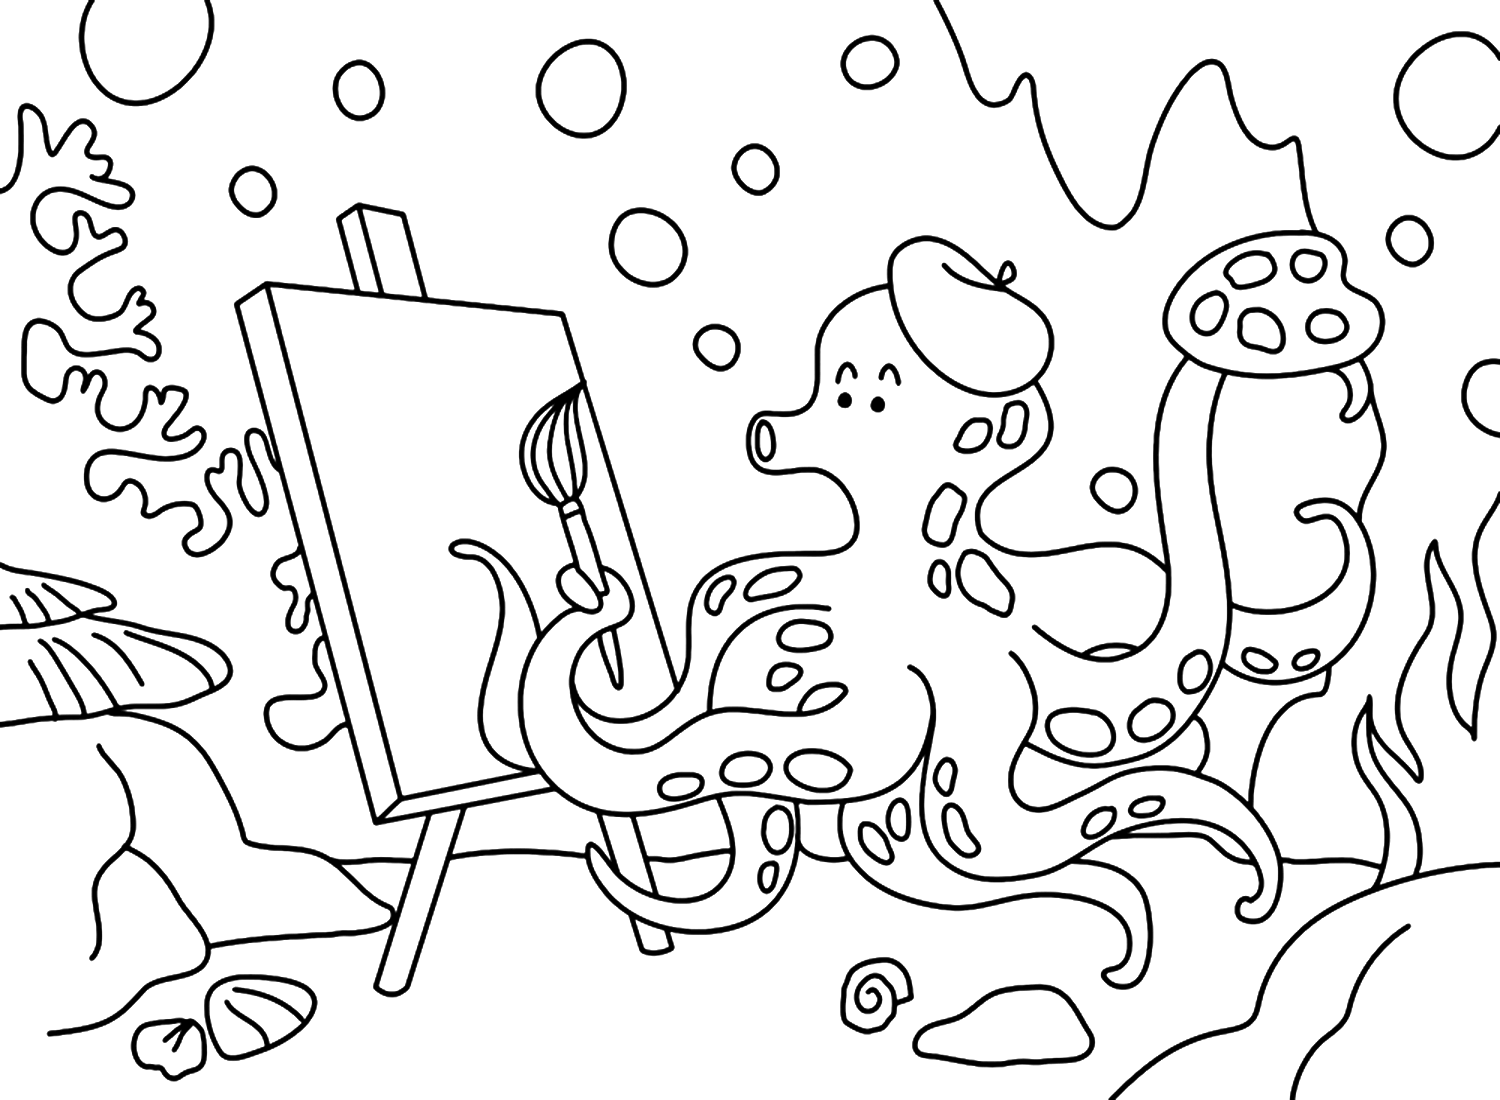 Oktopus-Zeichnungs-Malvorlage von Octopus